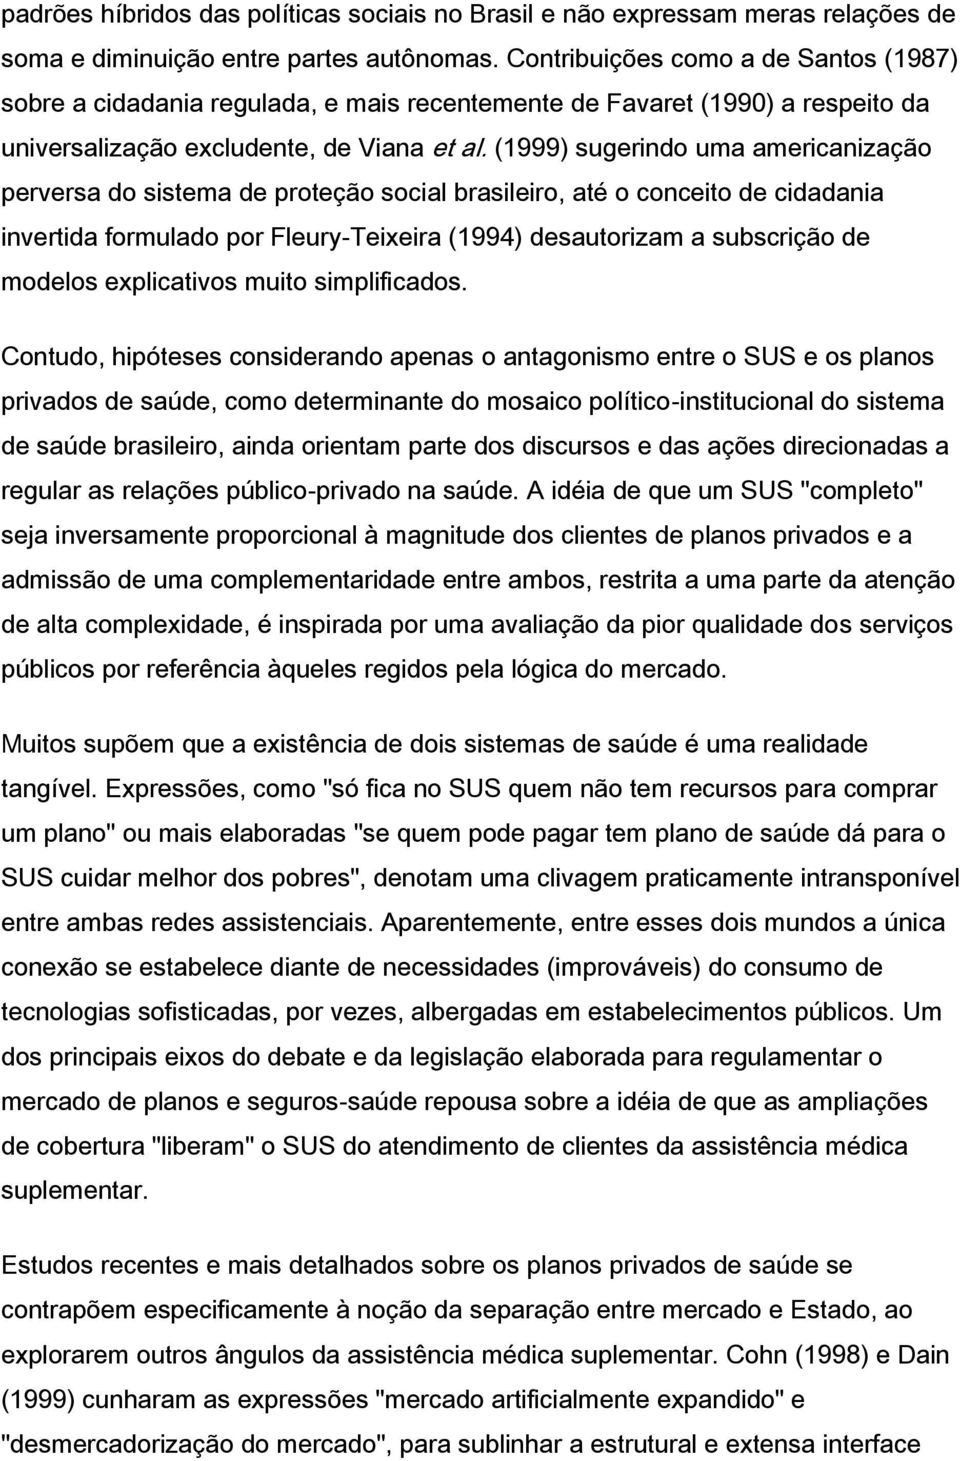 (1999) sugerindo uma americanização perversa do sistema de proteção social brasileiro, até o conceito de cidadania invertida formulado por Fleury-Teixeira (1994) desautorizam a subscrição de modelos